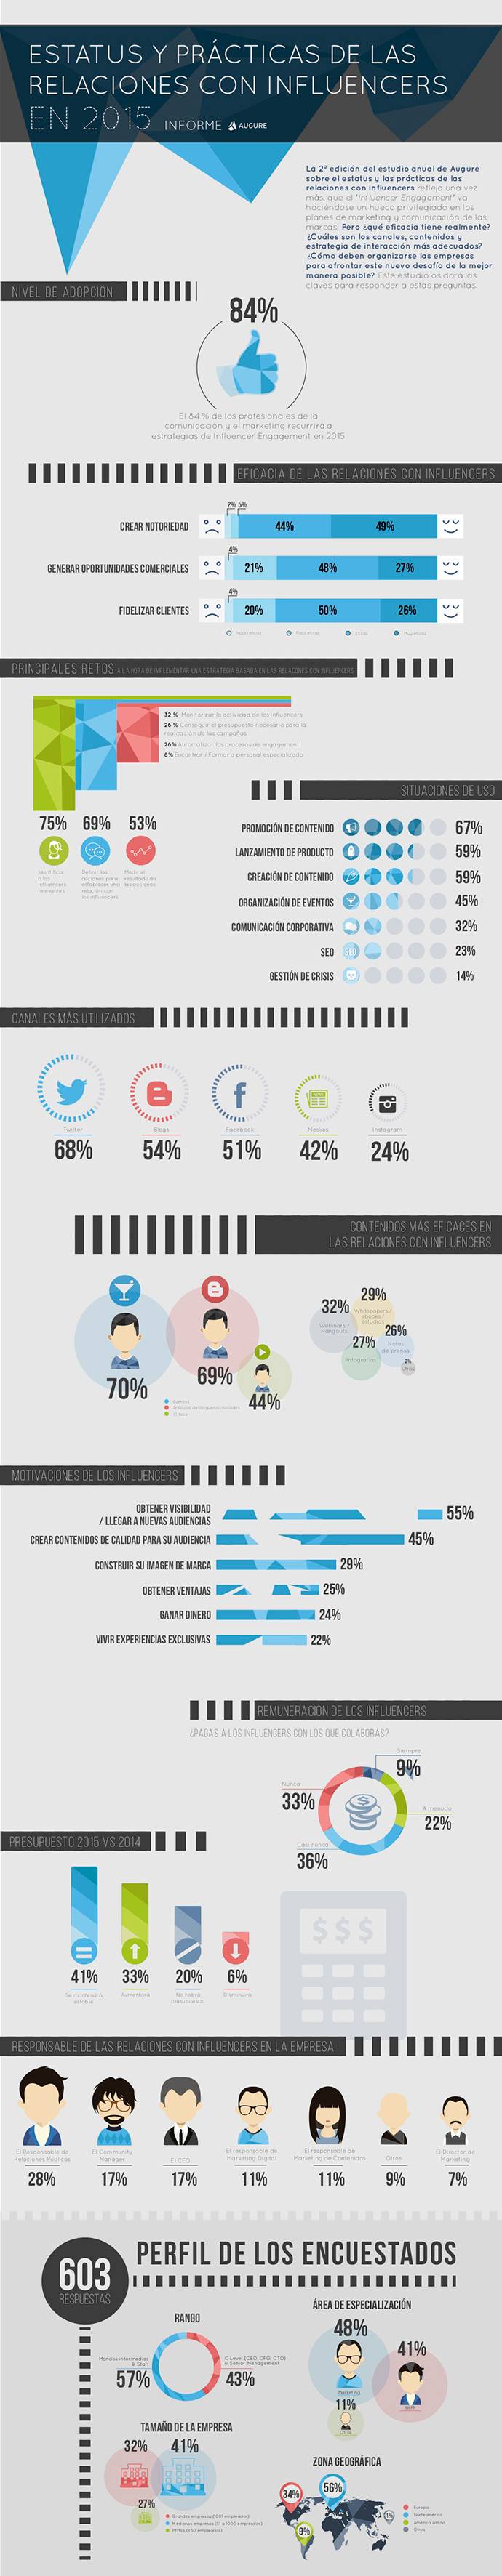 Marketing-de-influencers-Infografia